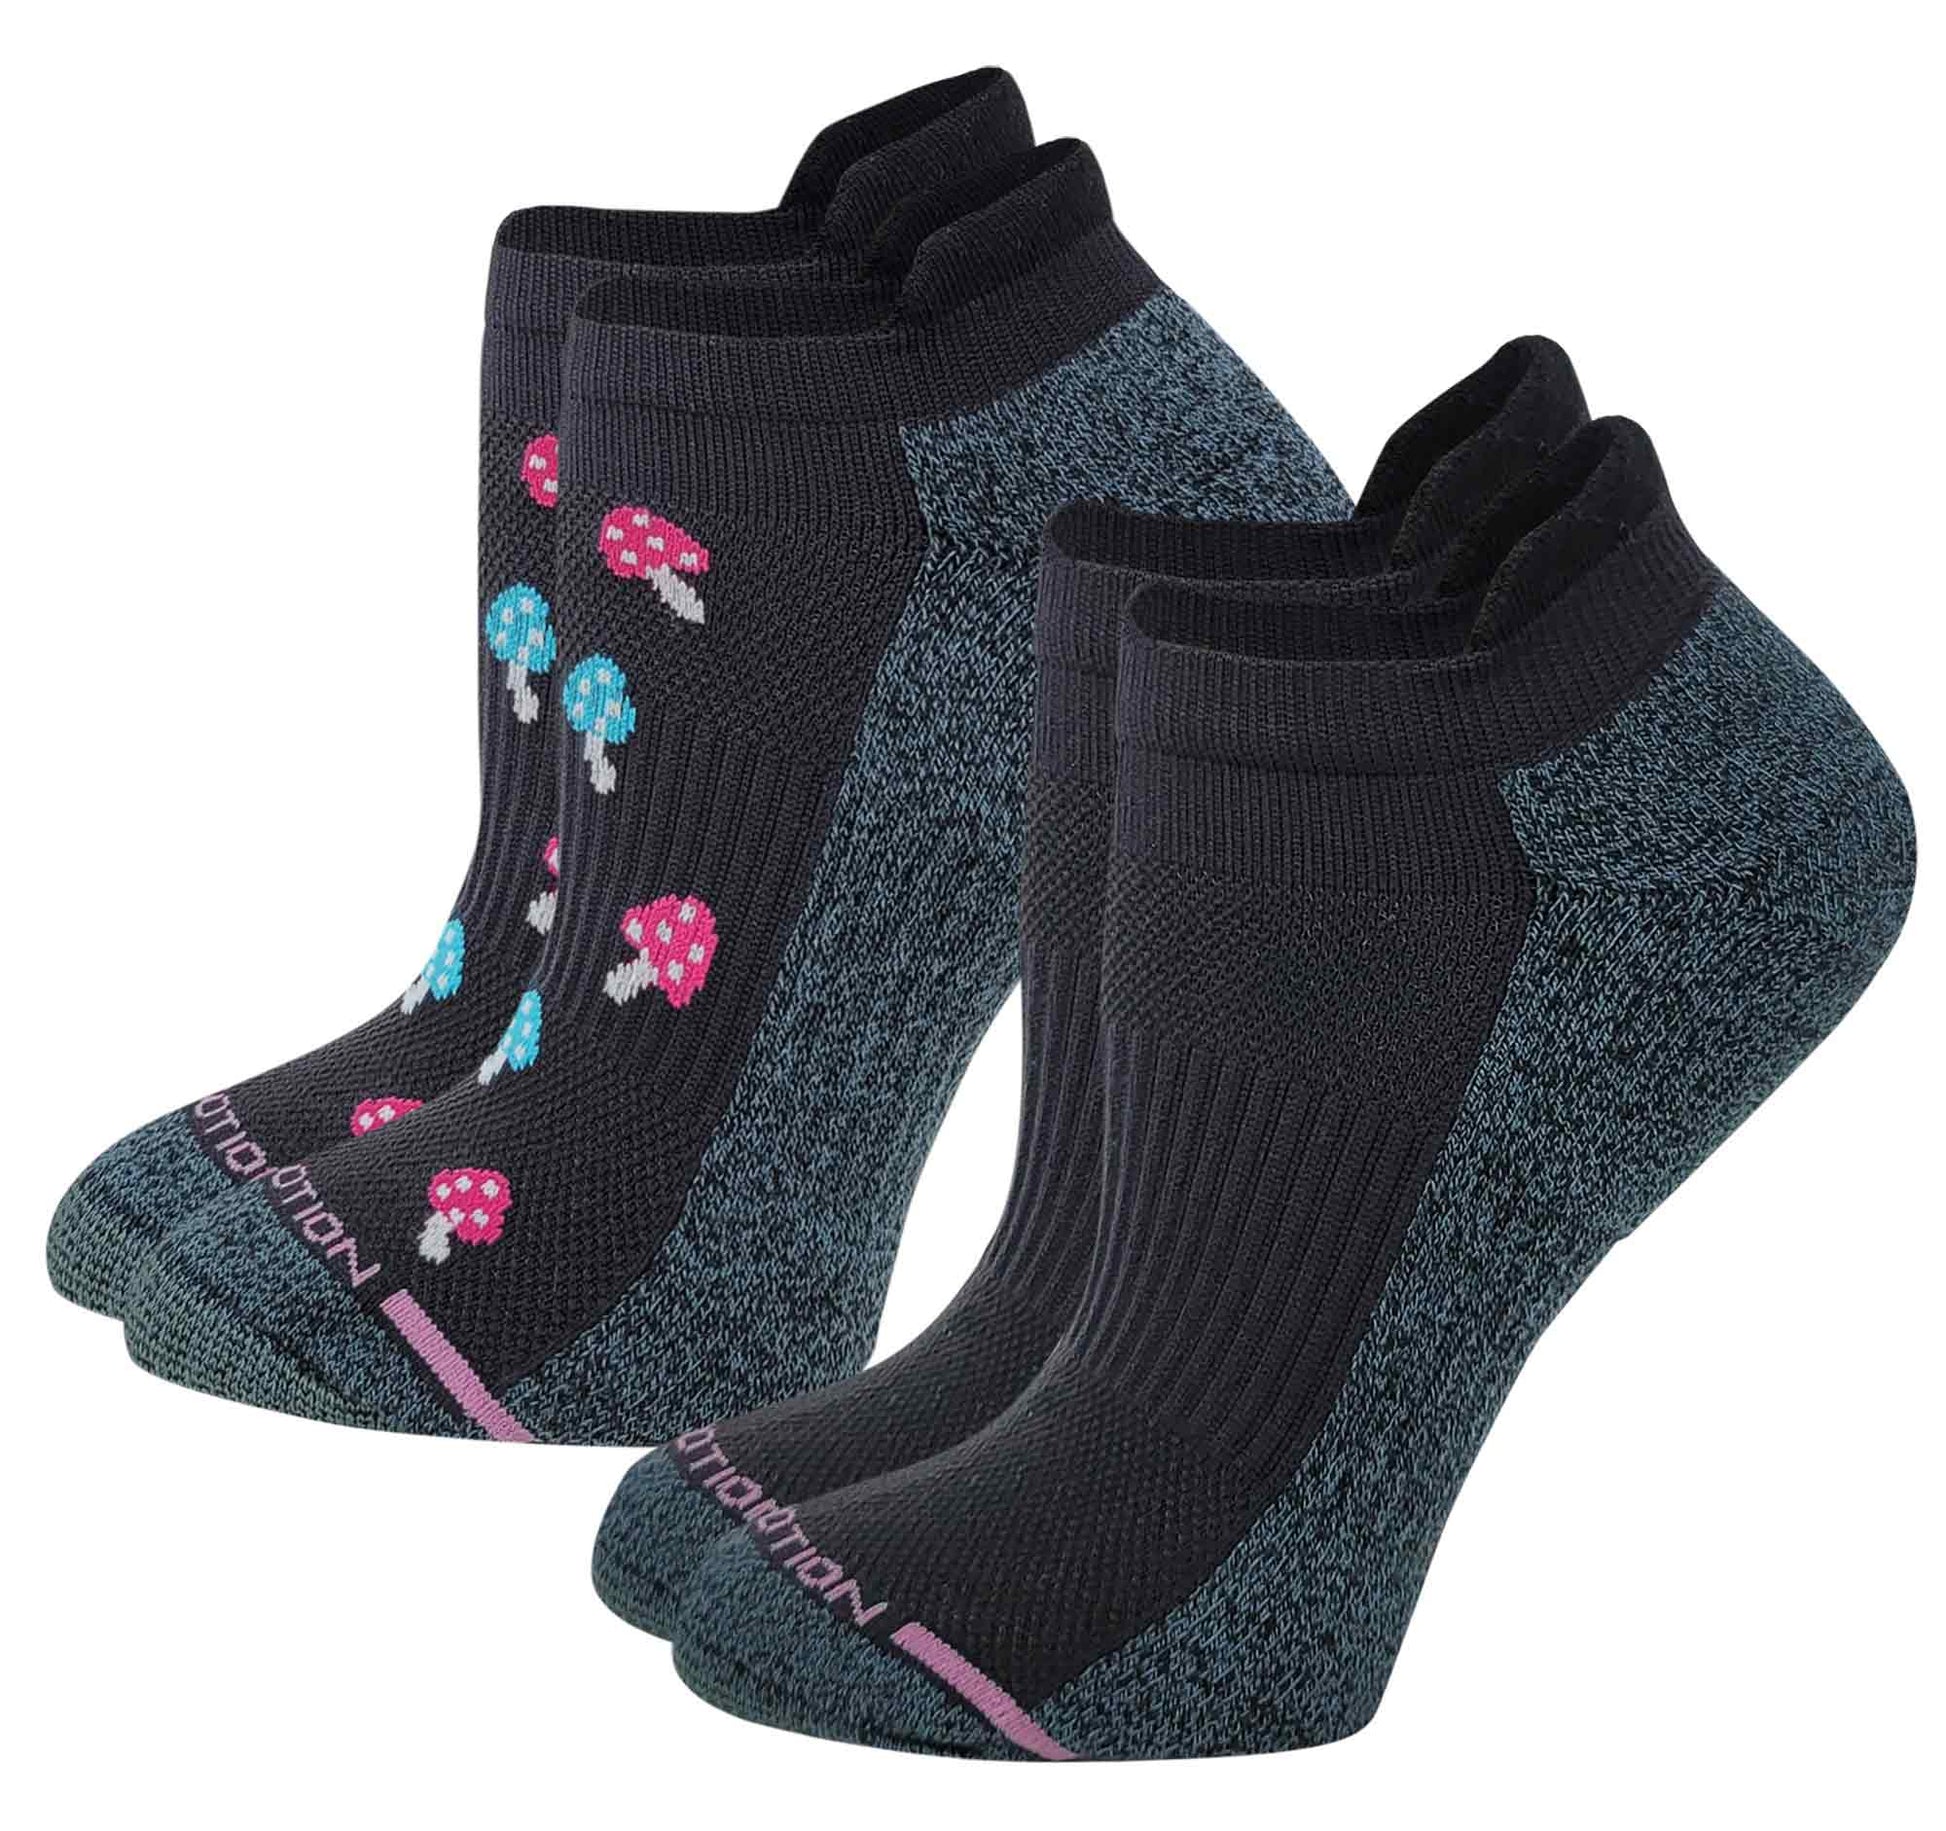 Black Ankle Compression Socks 